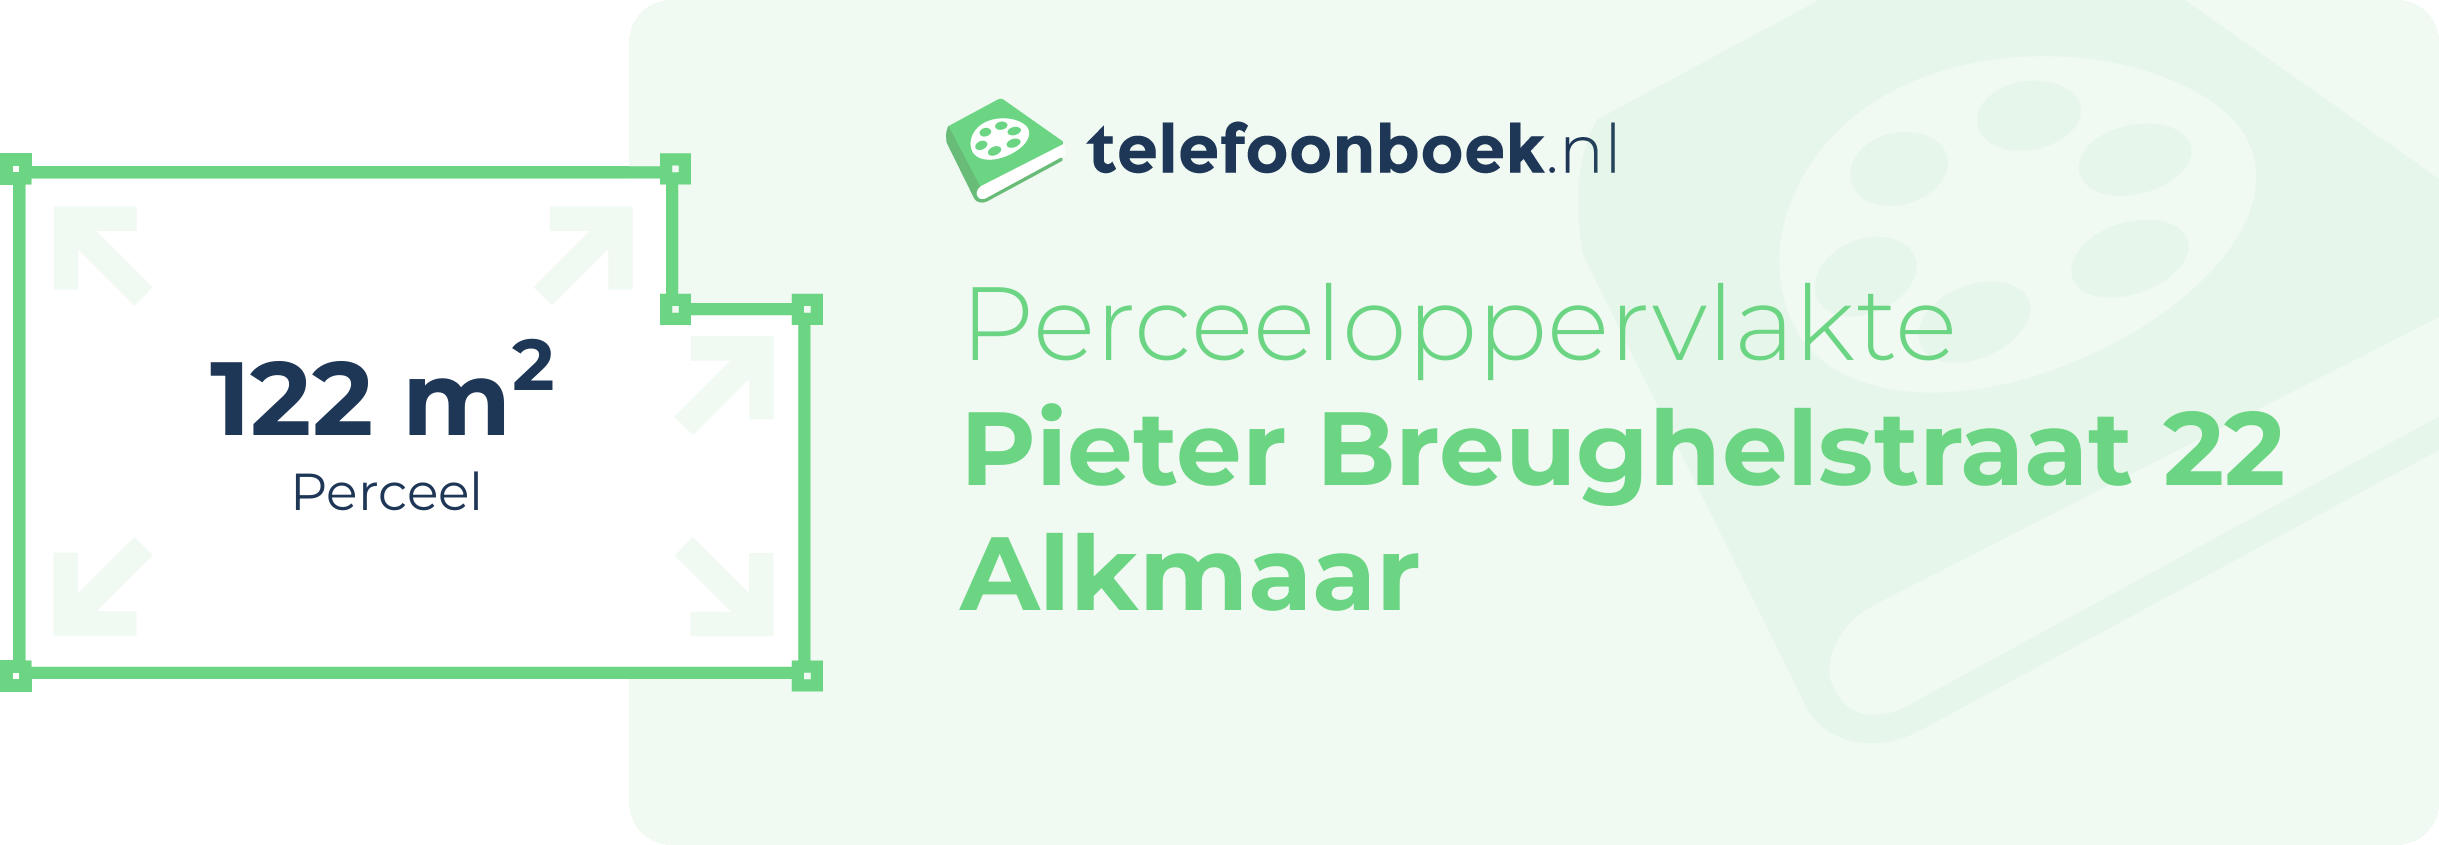 Perceeloppervlakte Pieter Breughelstraat 22 Alkmaar